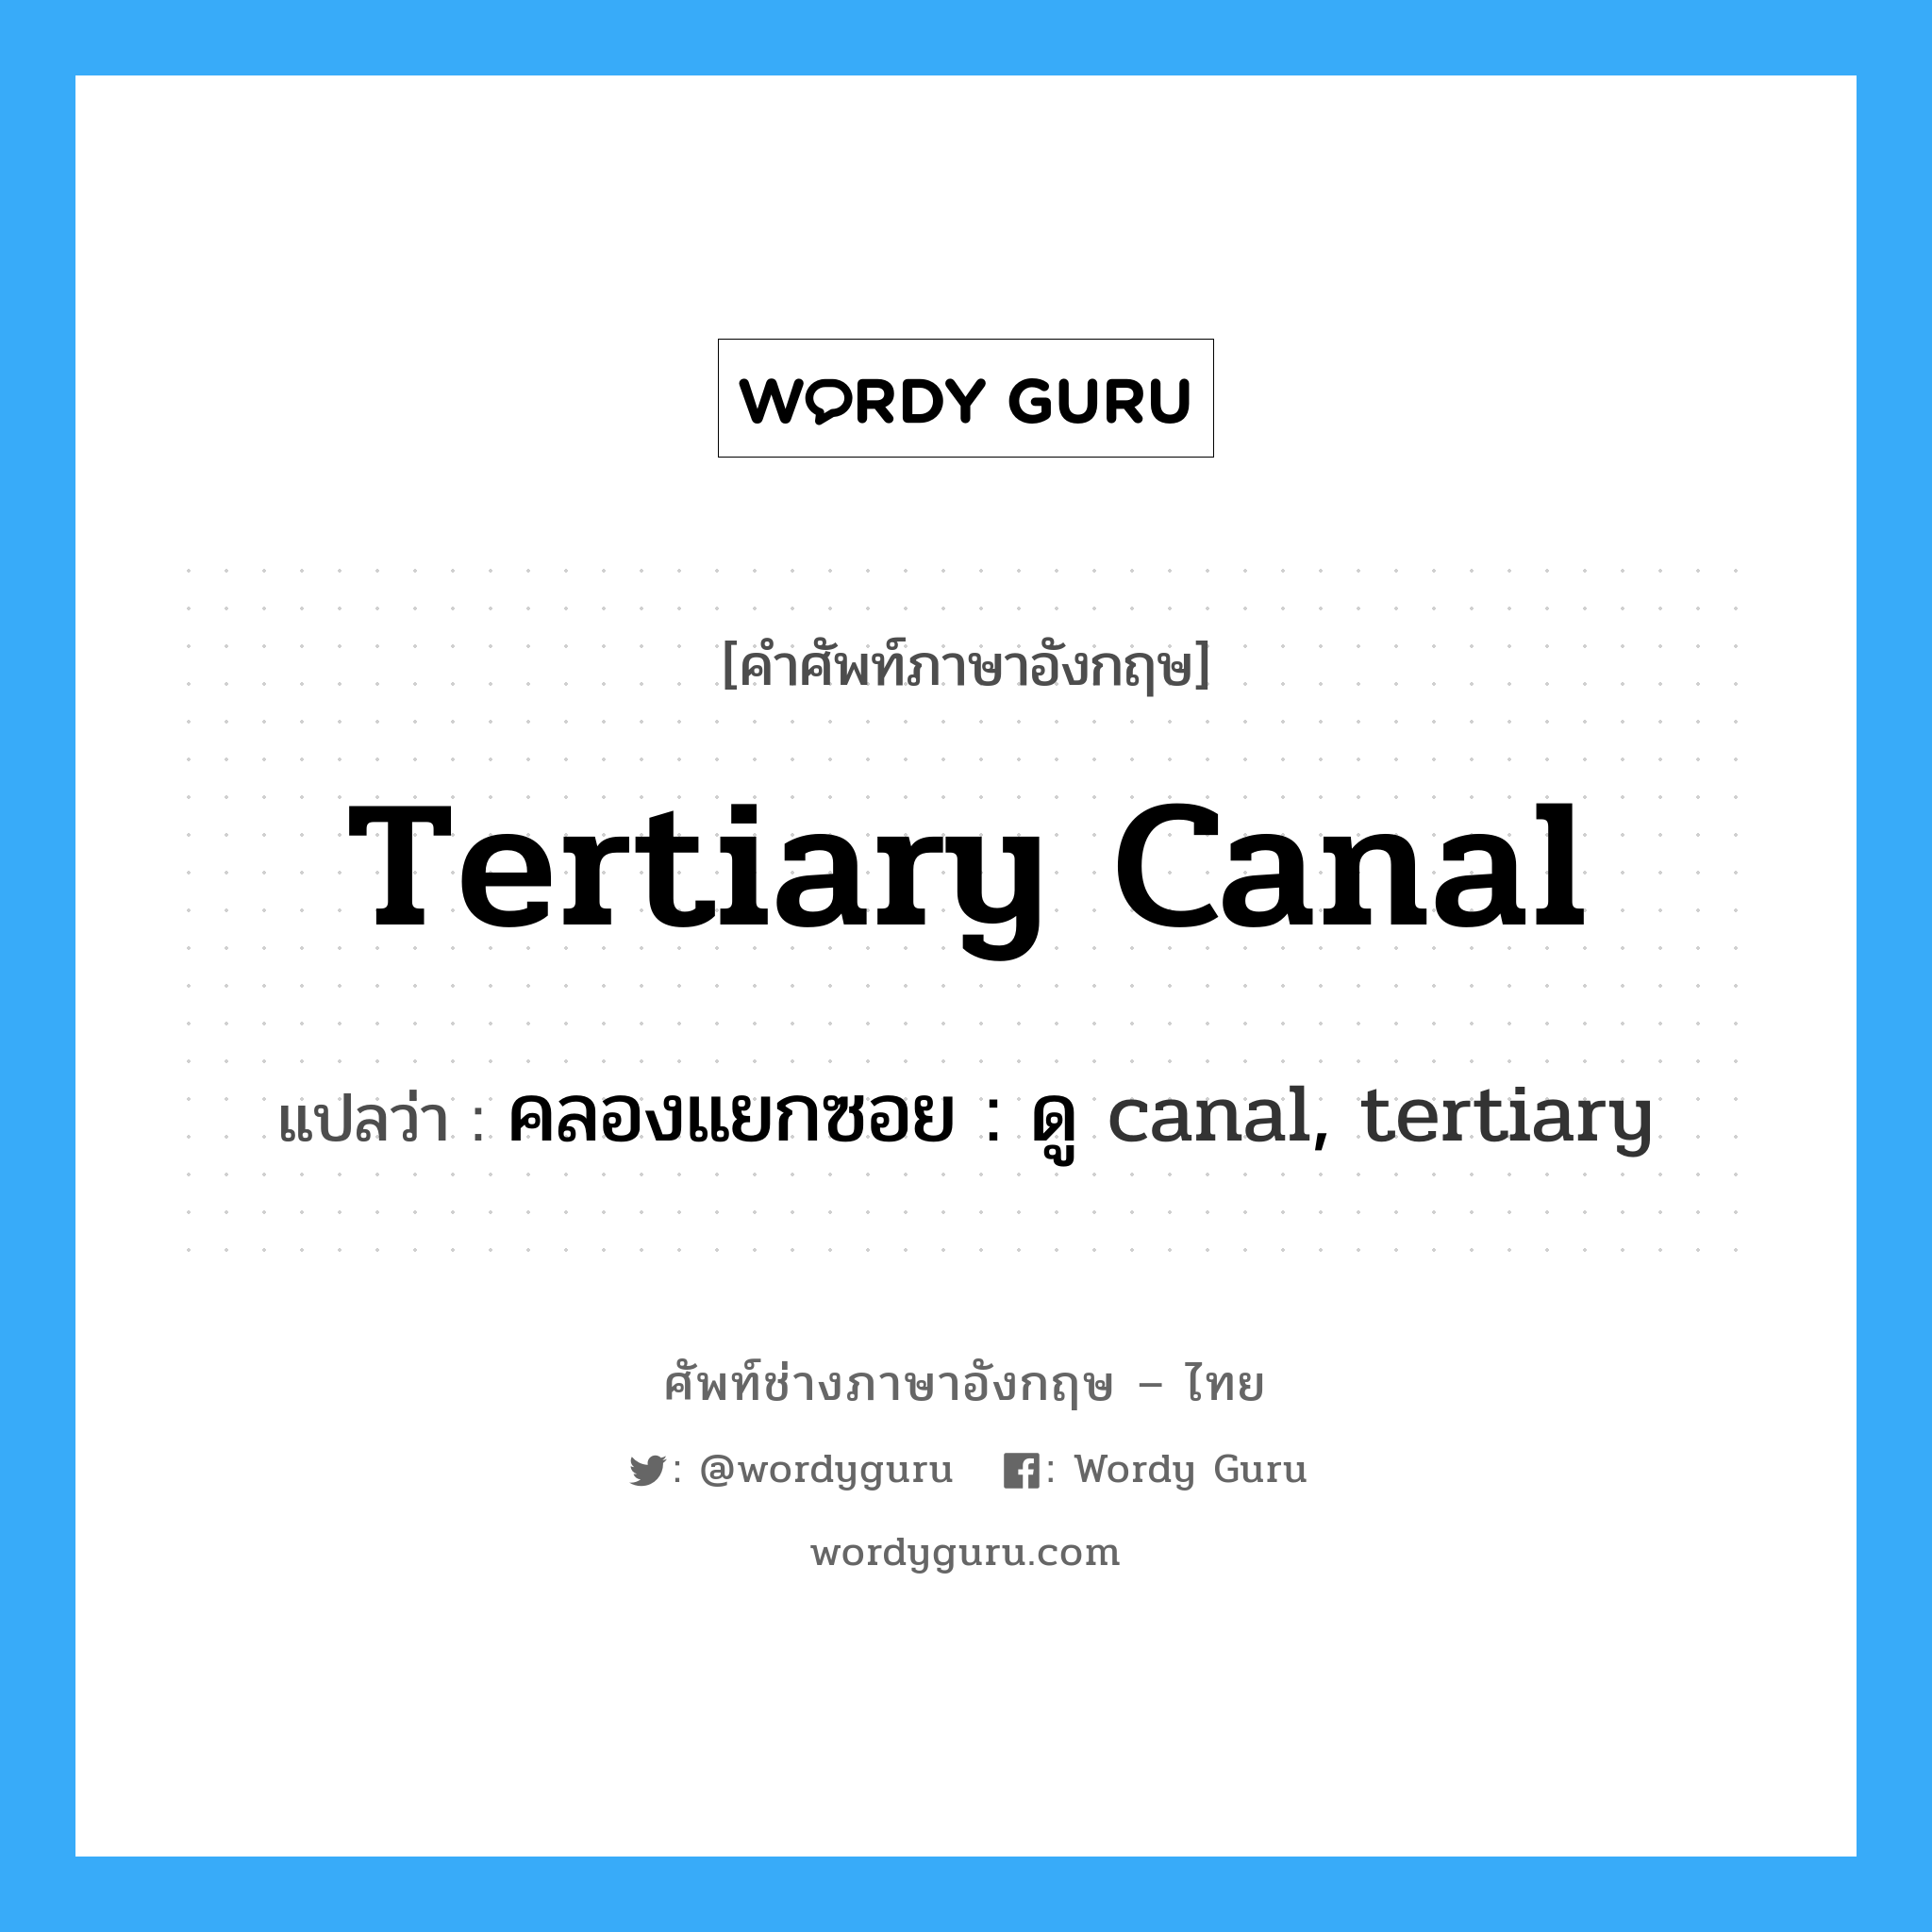 tertiary canal แปลว่า?, คำศัพท์ช่างภาษาอังกฤษ - ไทย tertiary canal คำศัพท์ภาษาอังกฤษ tertiary canal แปลว่า คลองแยกซอย : ดู canal, tertiary